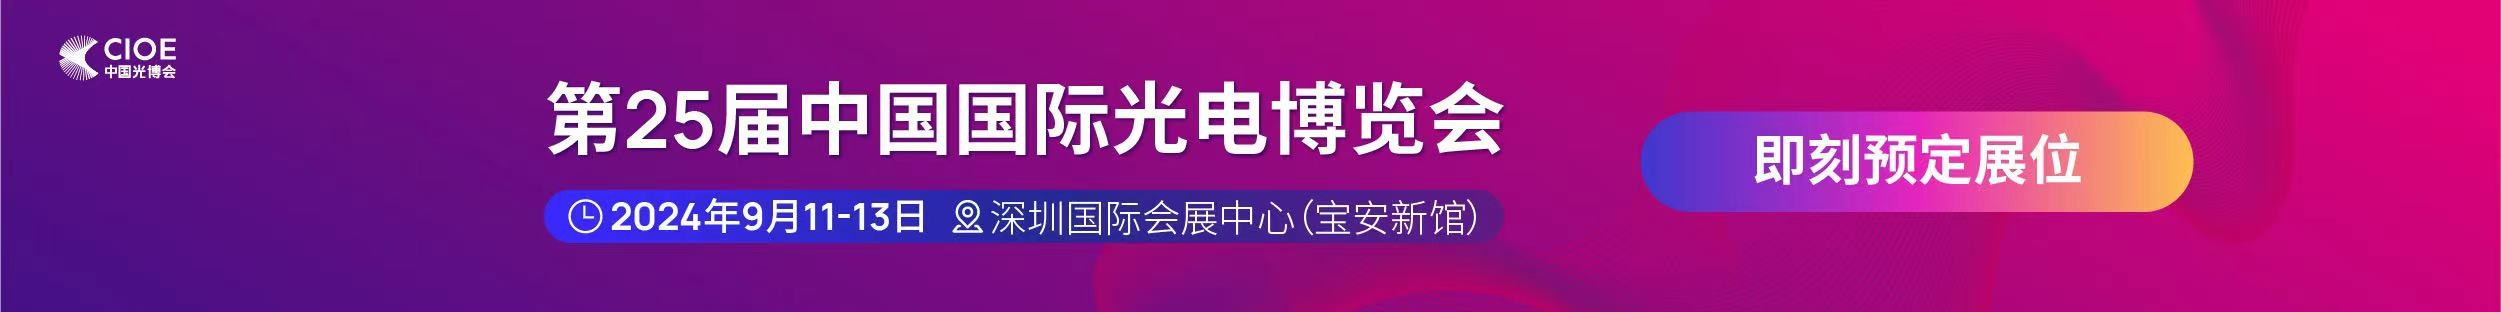 凯发k8一触即发公司受邀参展第25届中国国际光电博览会